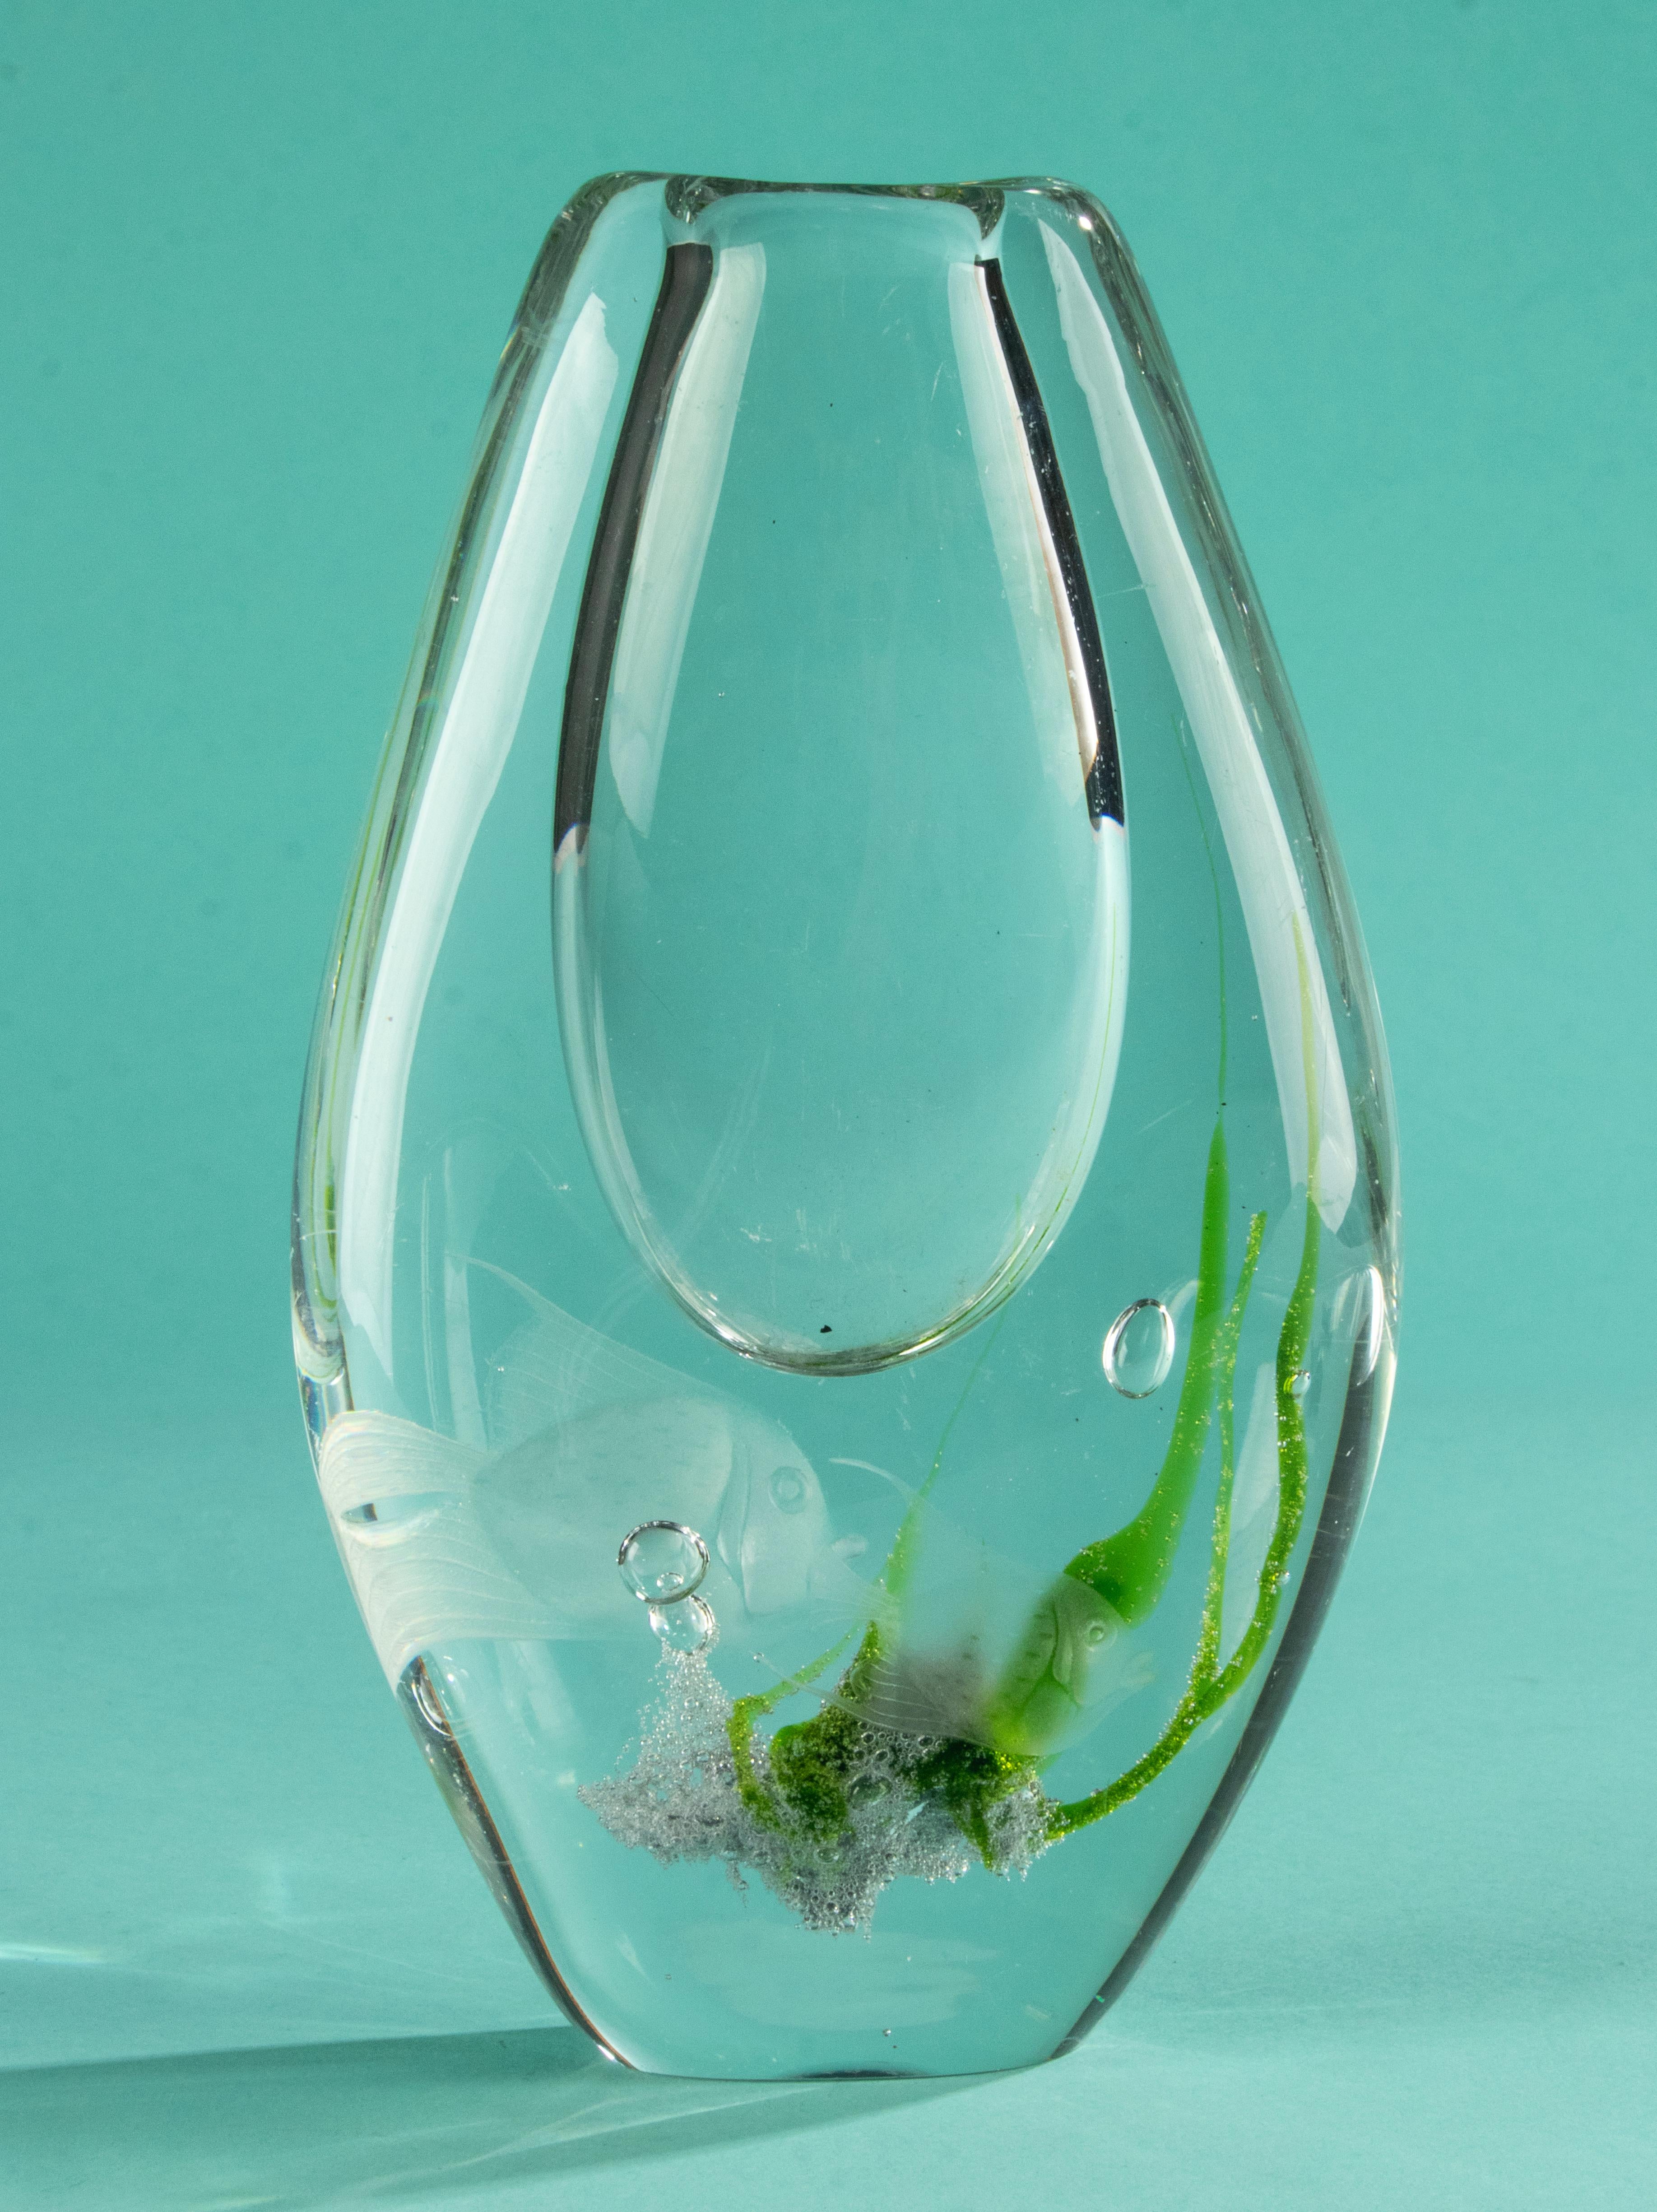 Eine schöne Vase aus Kunstglas der schwedischen Marke Kosta soda, entworfen von Vicke Lindstrand. 
Die Vase ist aus dickem Schichtglas mit klaren grünen Einschlüssen und geätzten Fischen auf beiden Seiten gefertigt. 
Die Vase ist in gutem Zustand.